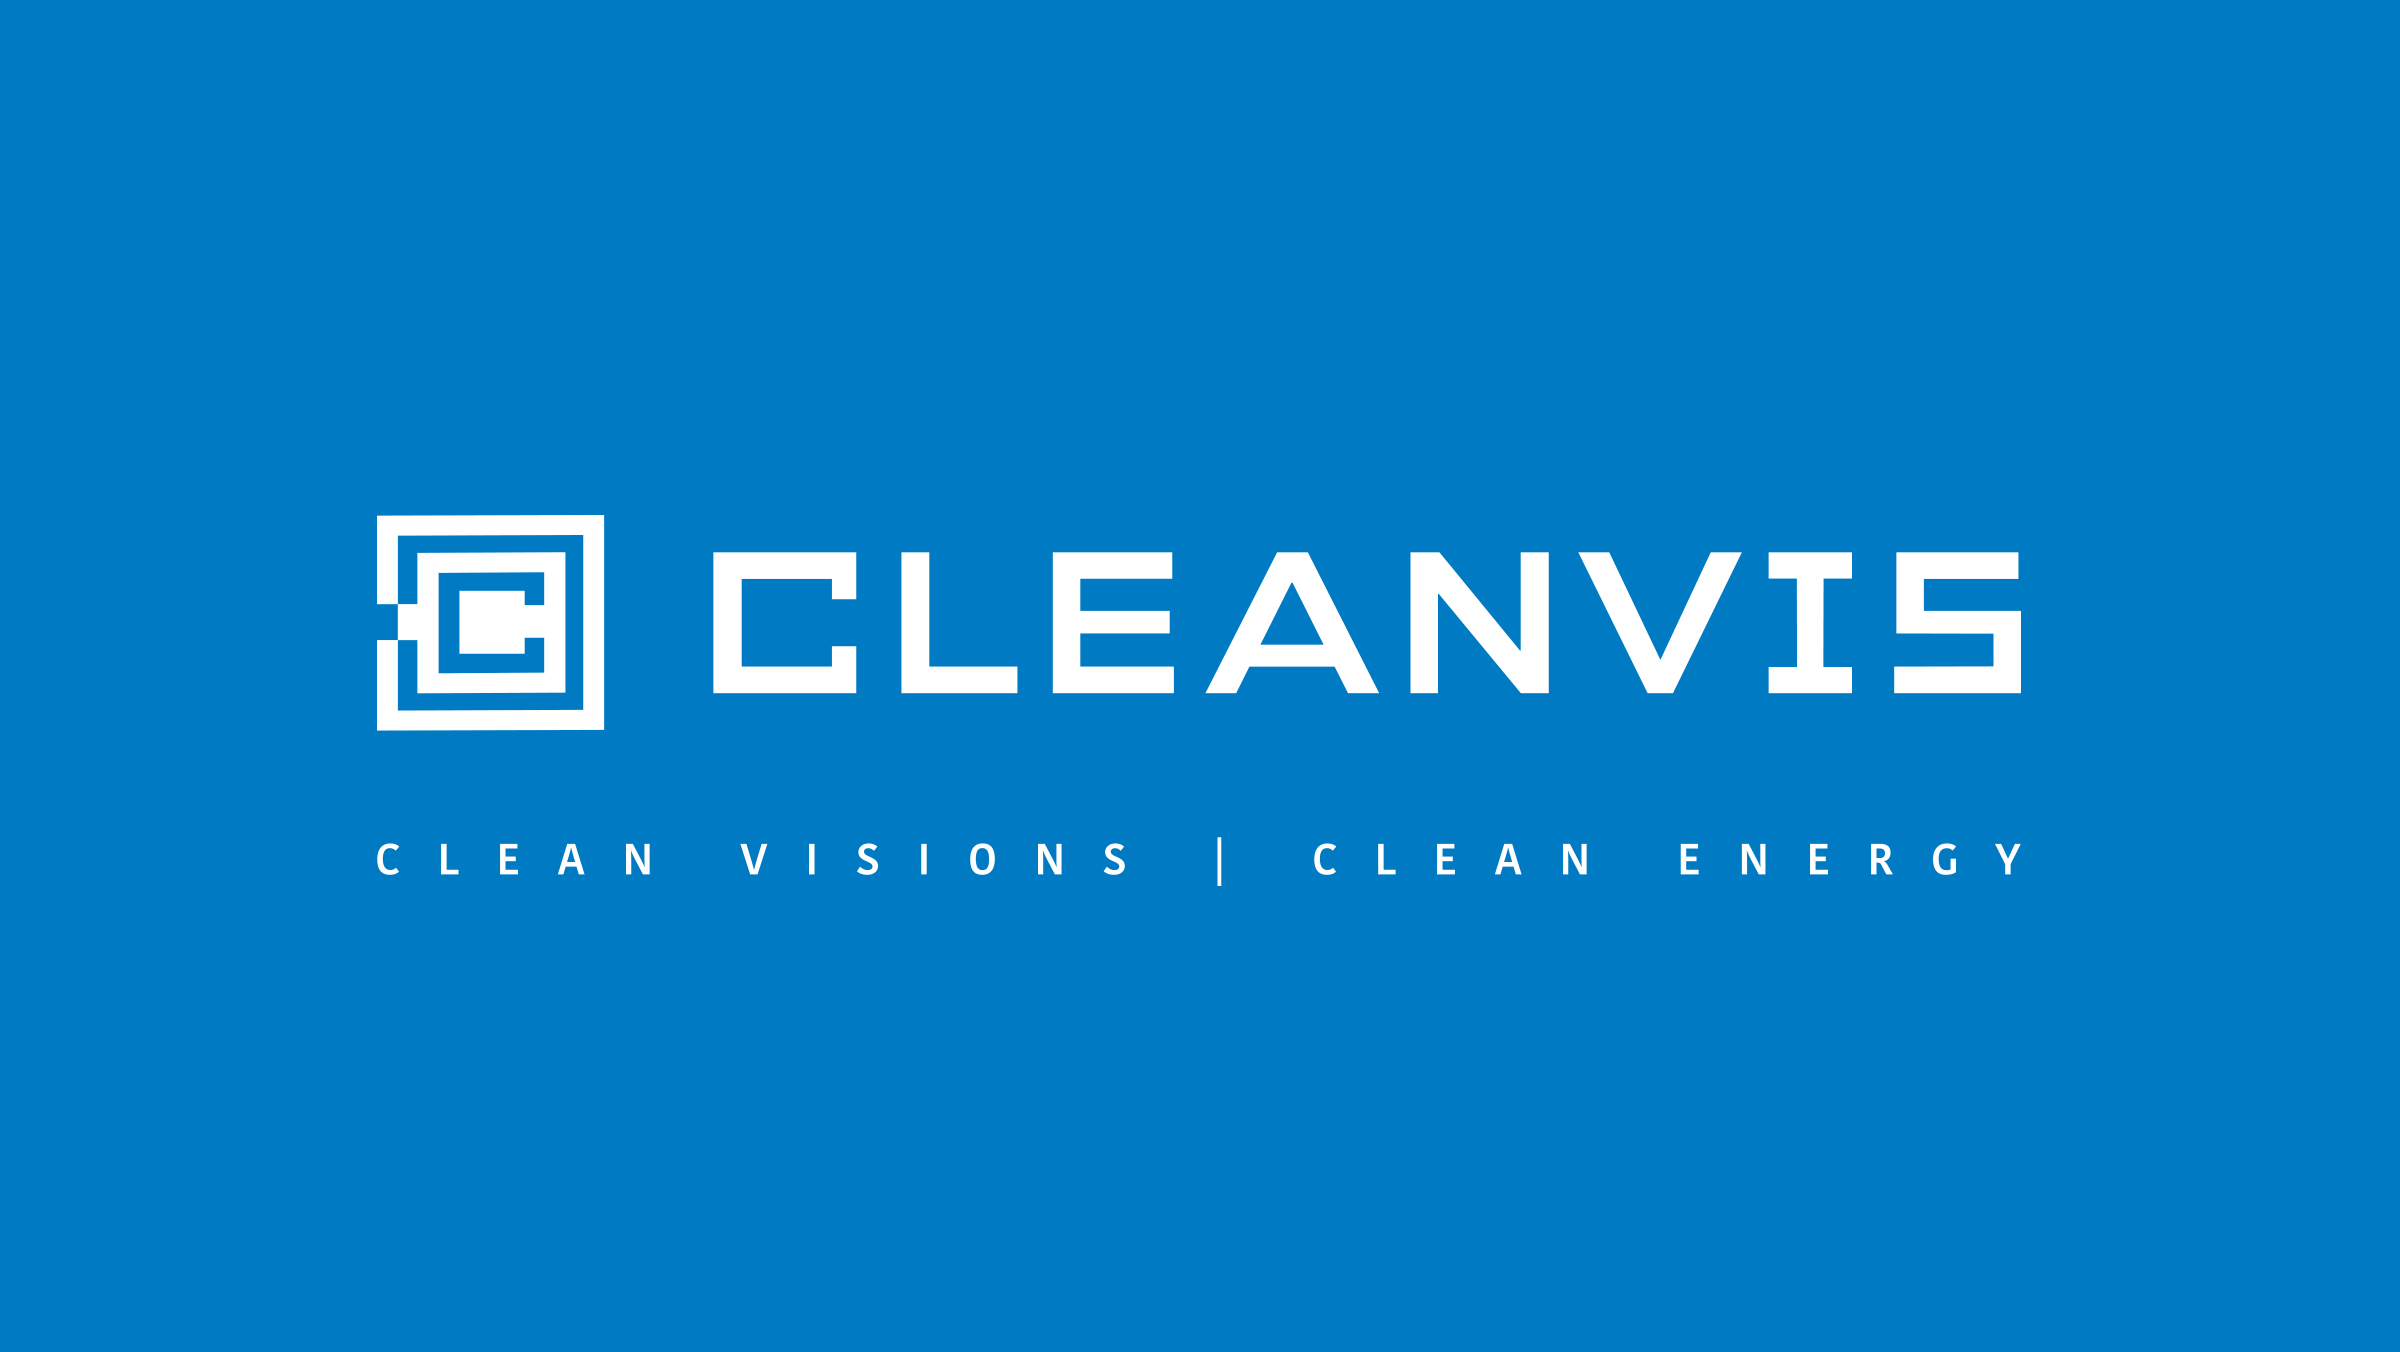 Logo und Corporate Design Cleanvis mit Slogan